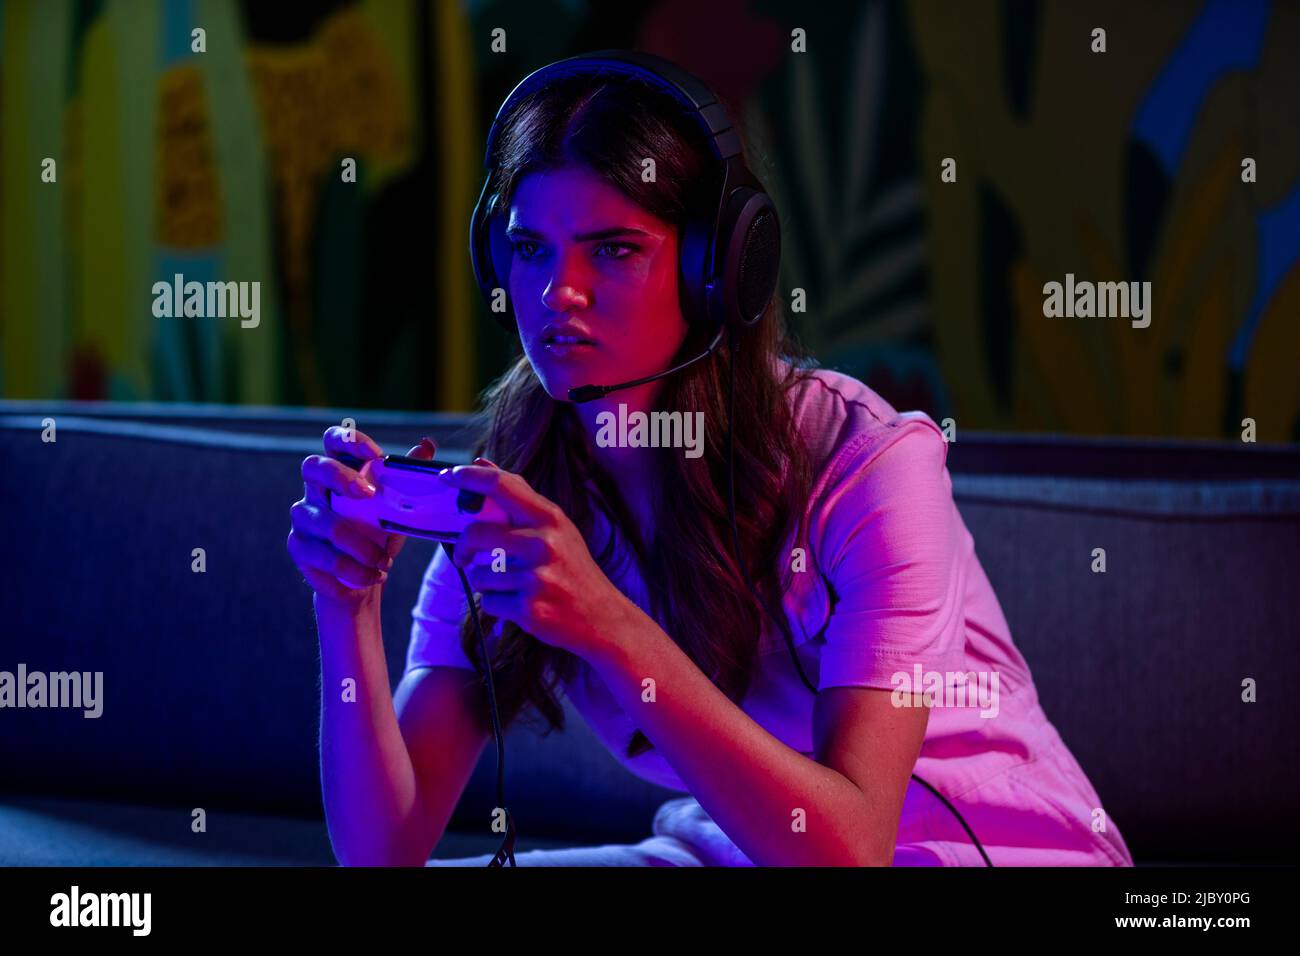 Eine wild aussehende junge Frau, die sich nach vorne lehnte und den Game Controller hoch hielt, während sie nachts ein Videospiel spielte. Stockfoto